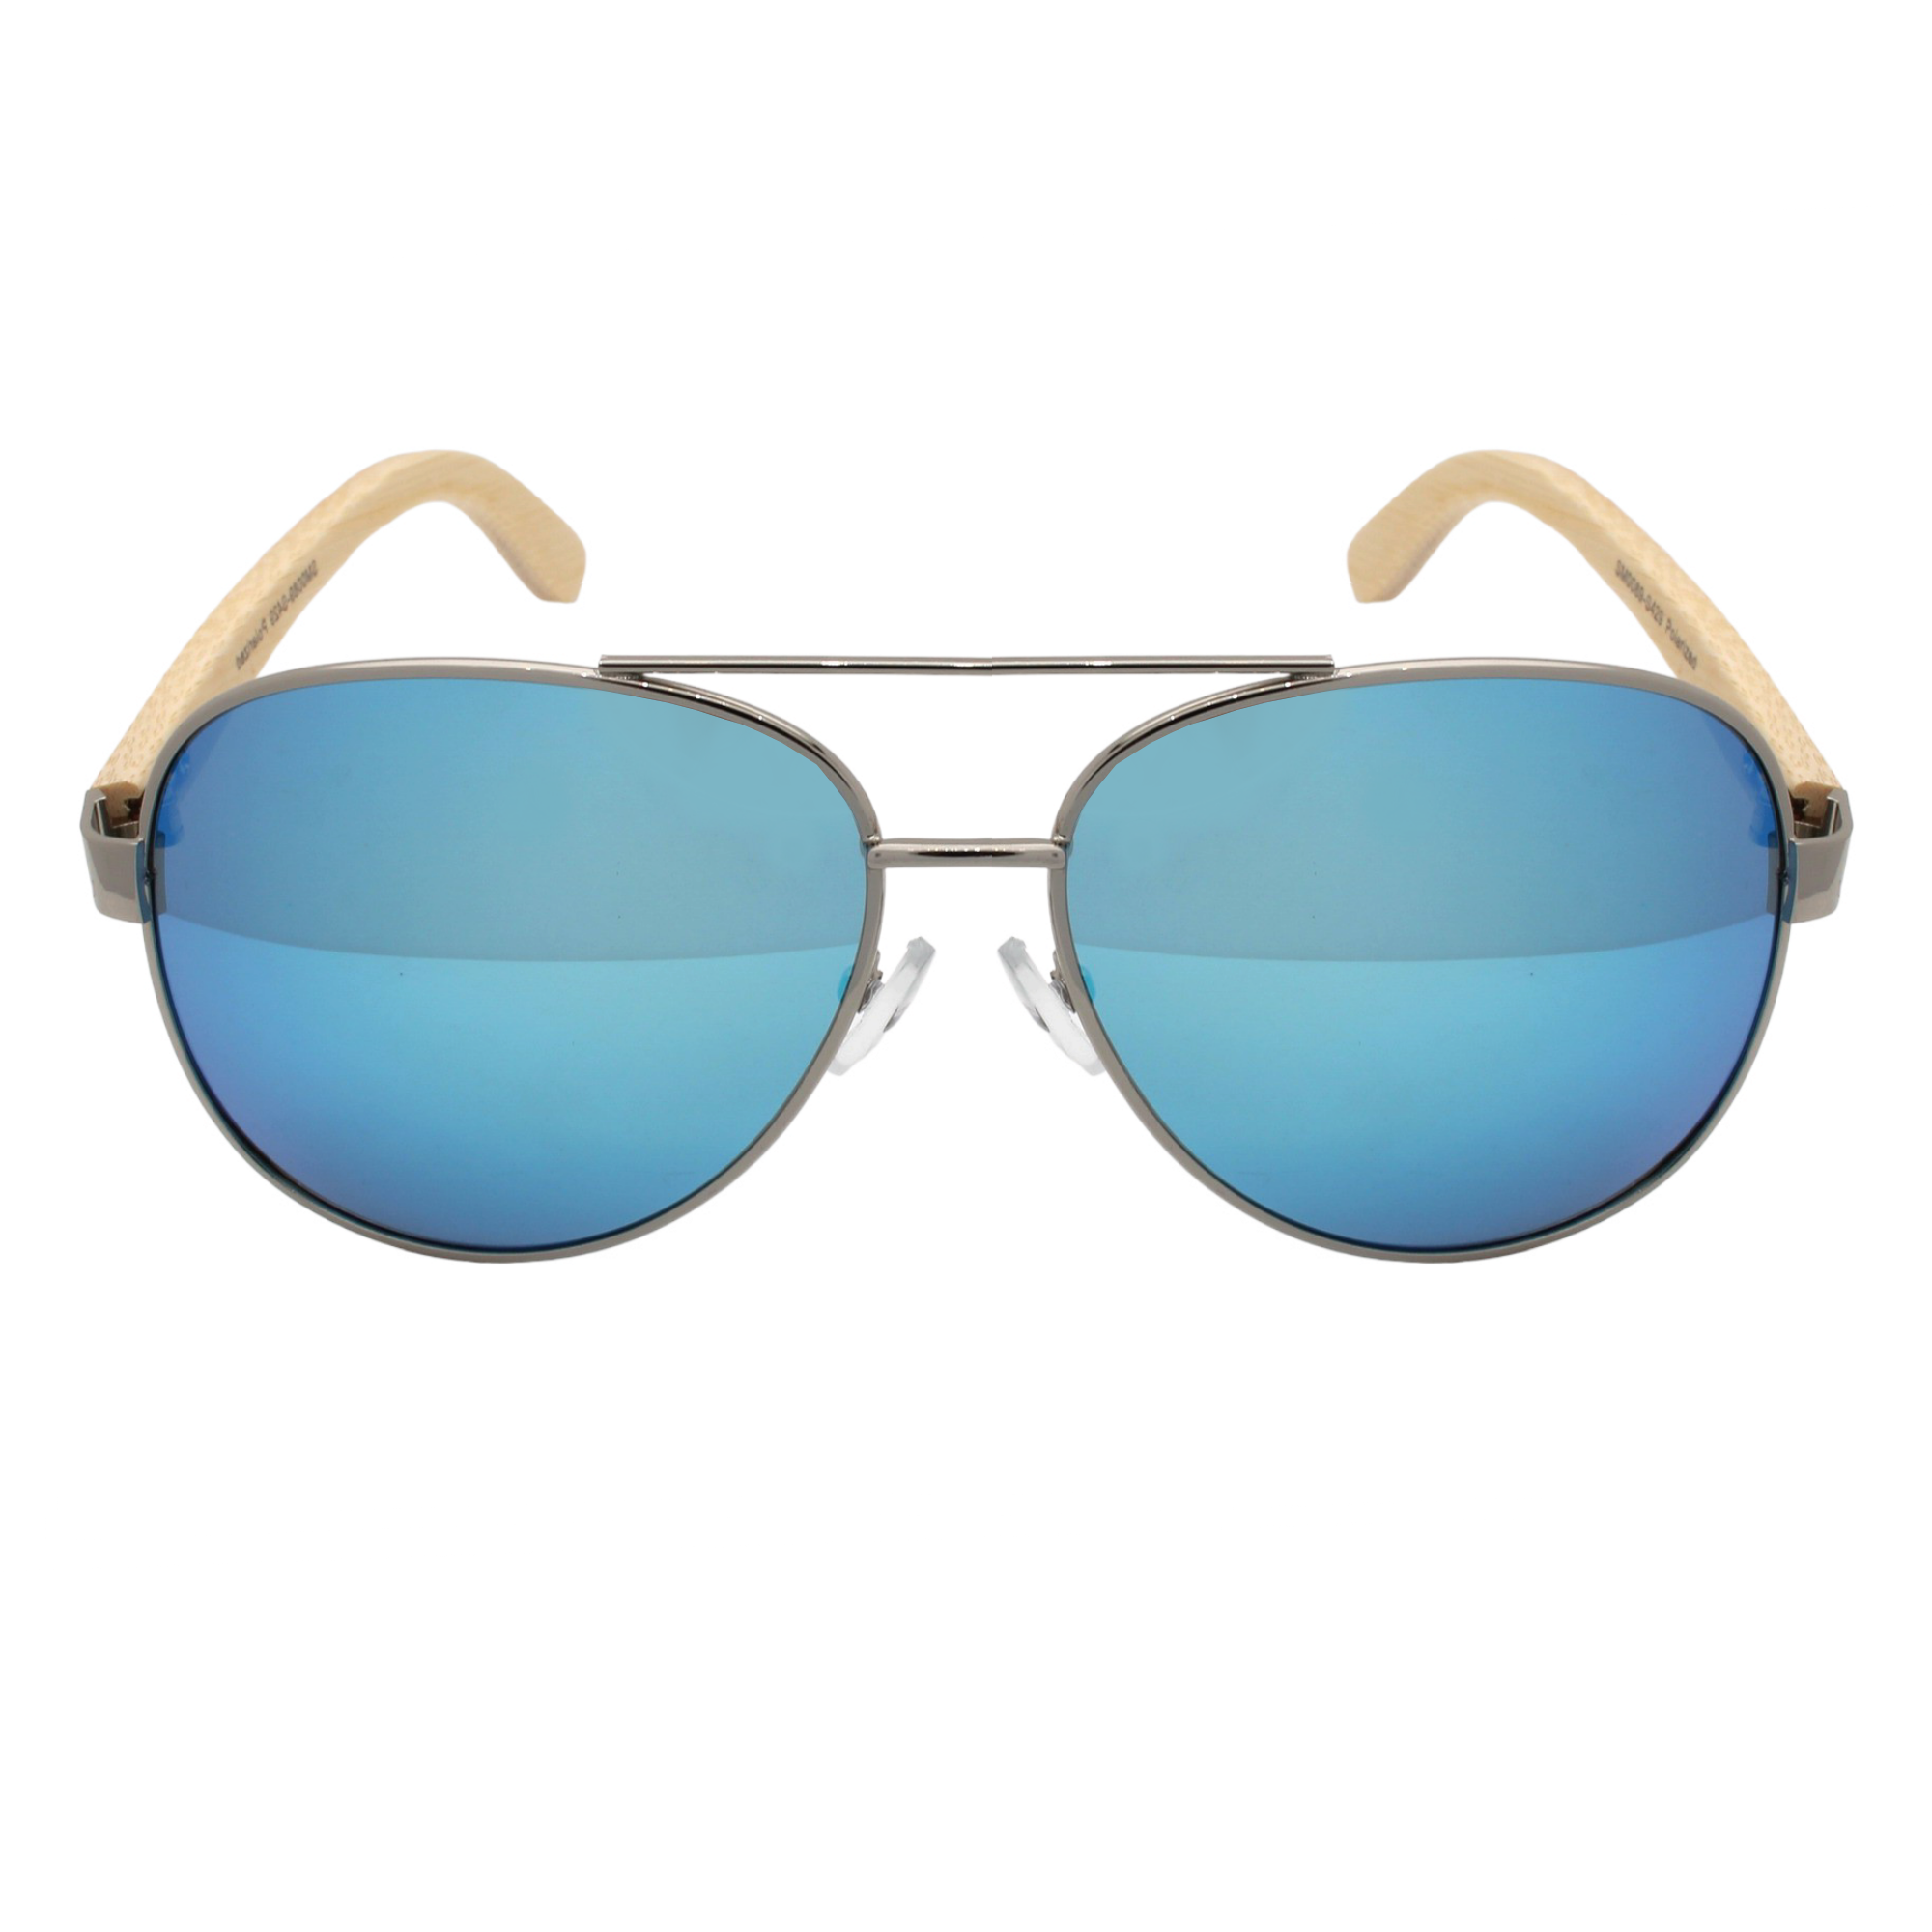 Luxxada Pilotenbrille Polarisiert Blau Verspiegelt Holz Bügel